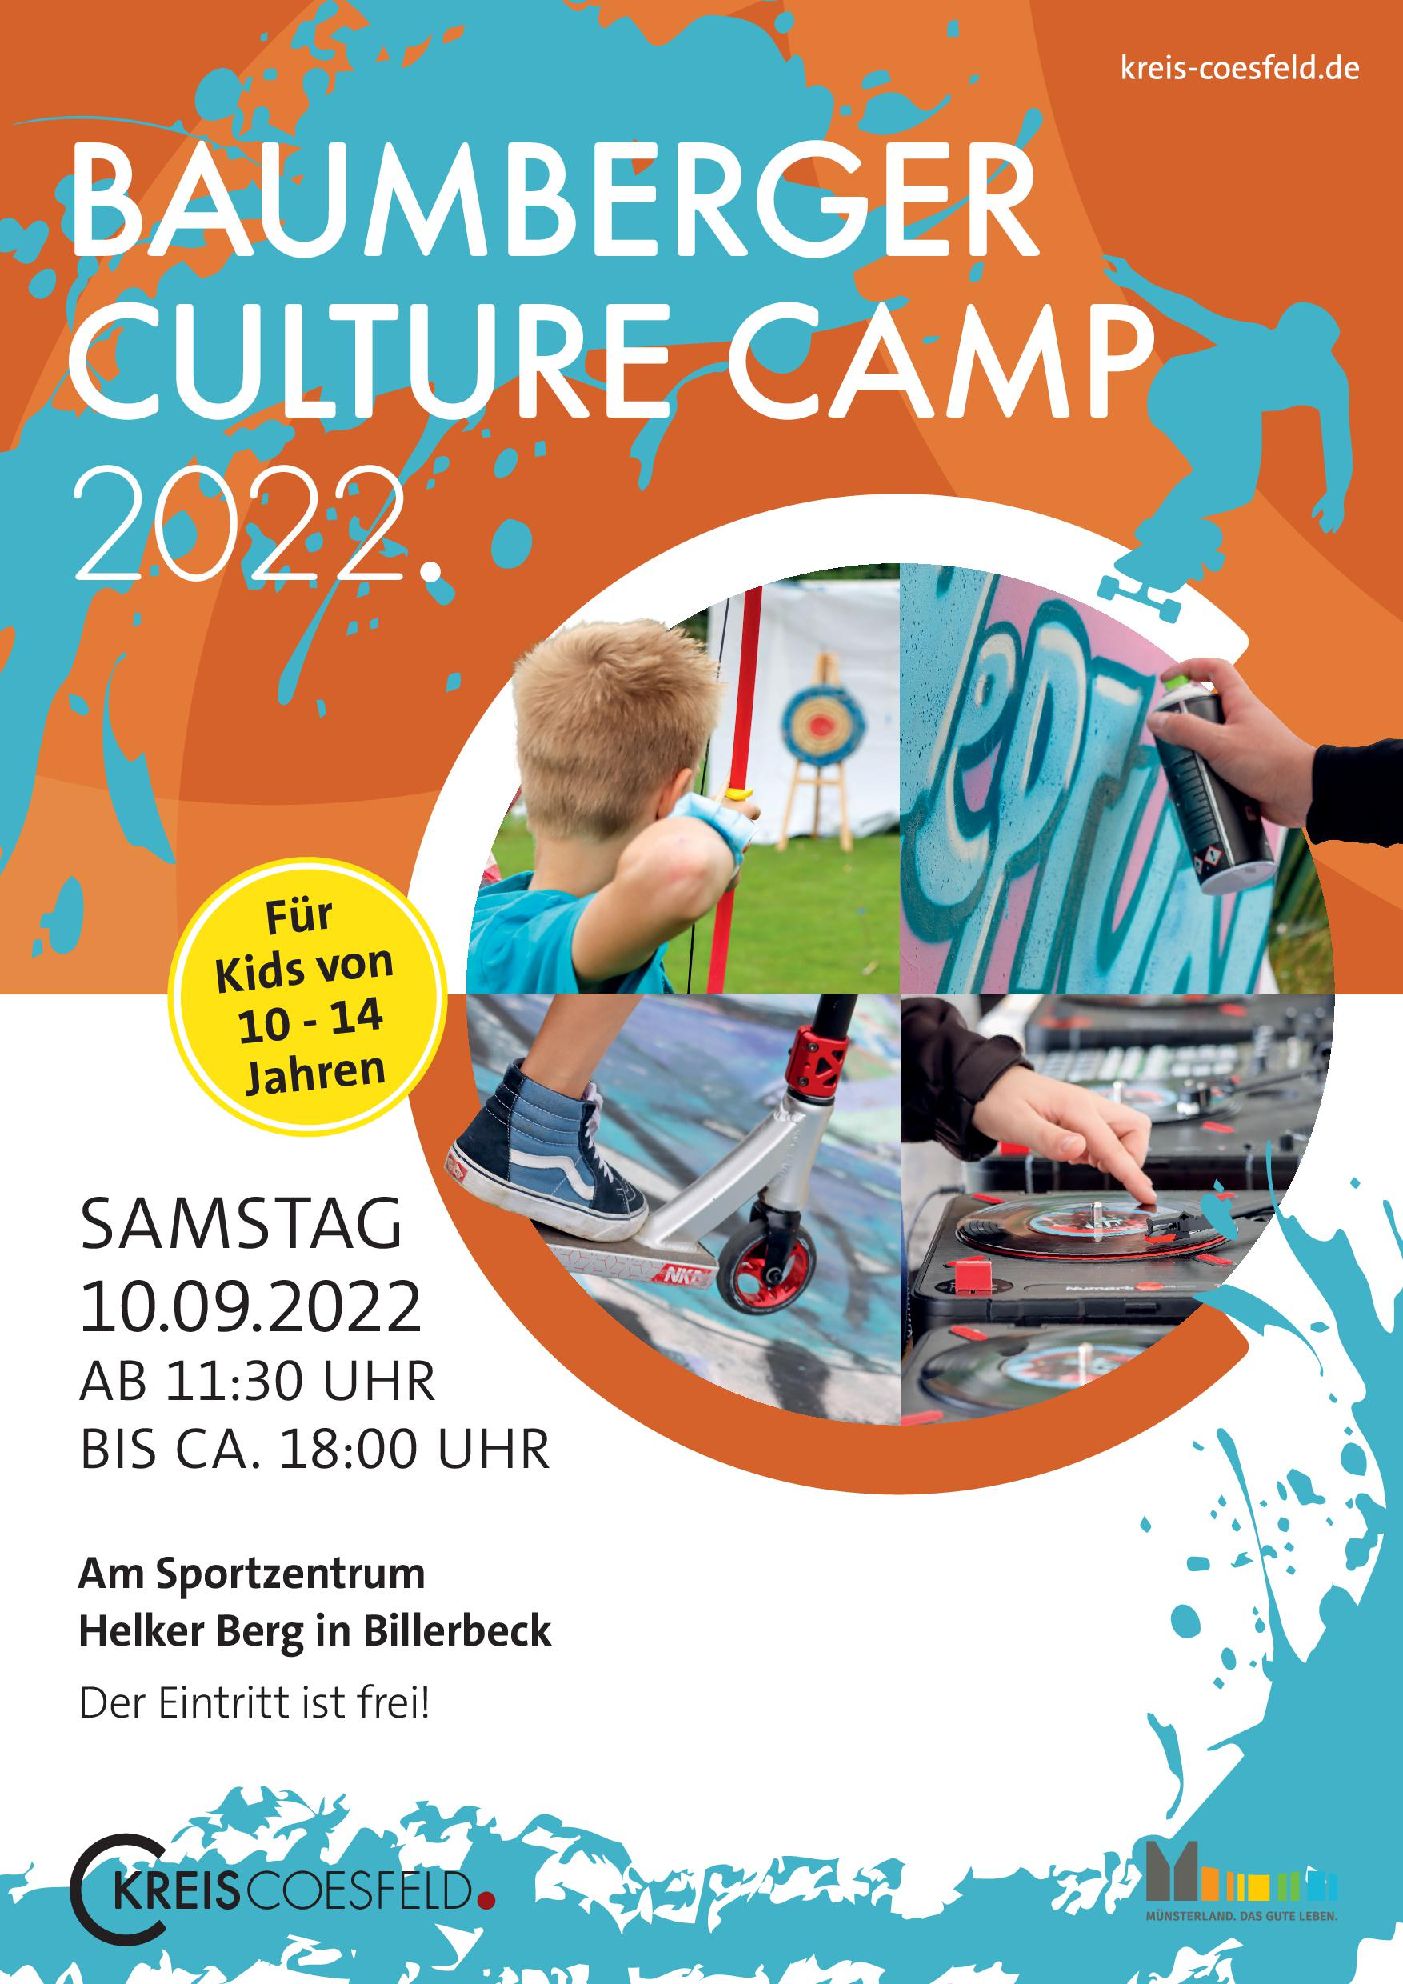 Baumberge Culture Camp 2022